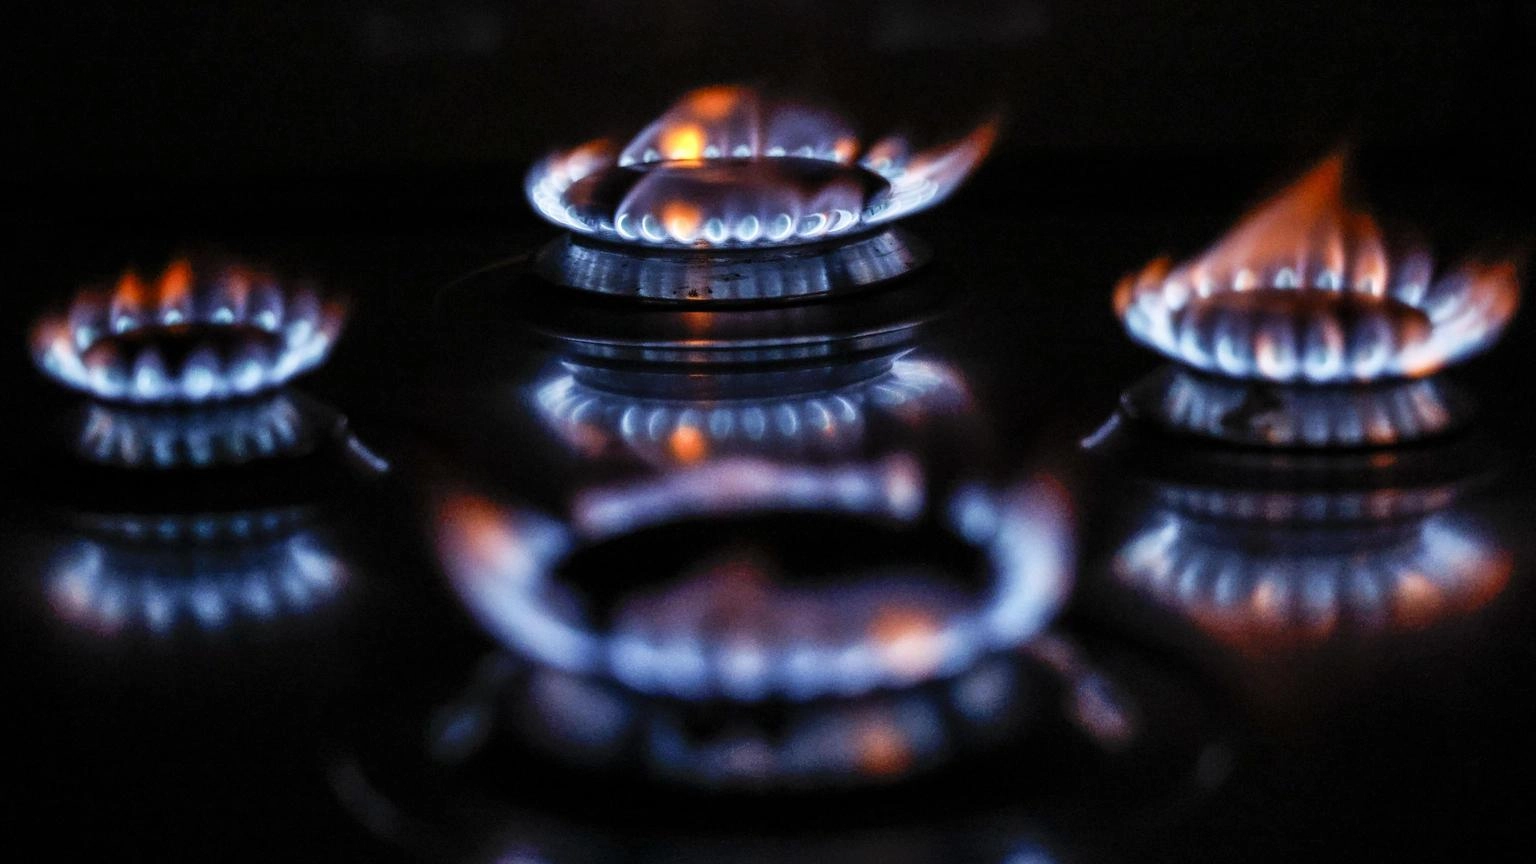 Nuovi acquisti congiunti Ue di gas, offerta 3 volte domanda